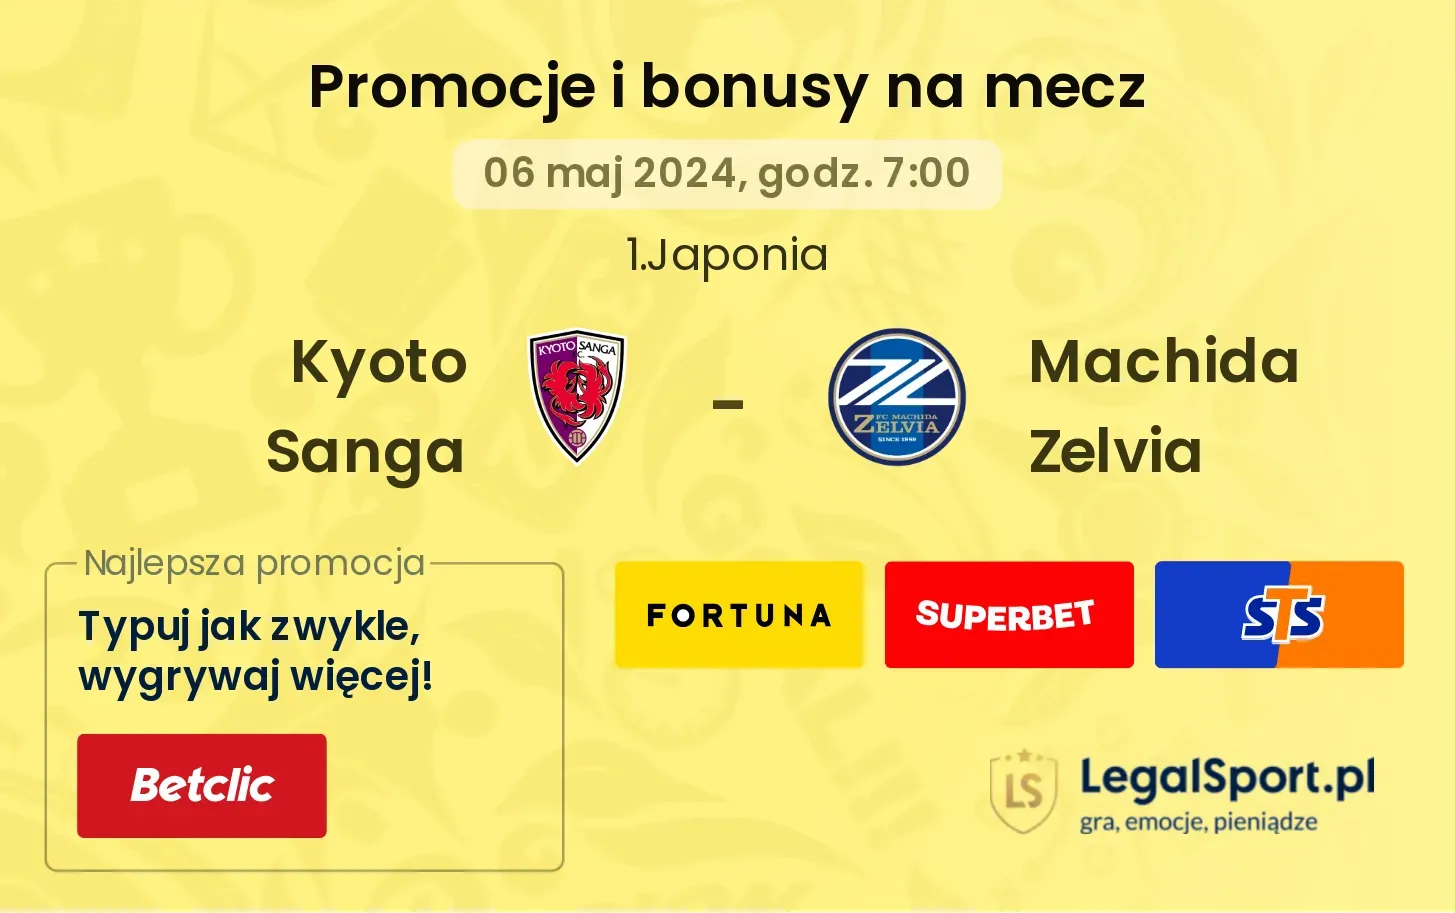 Kyoto Sanga - Machida Zelvia promocje bonusy na mecz